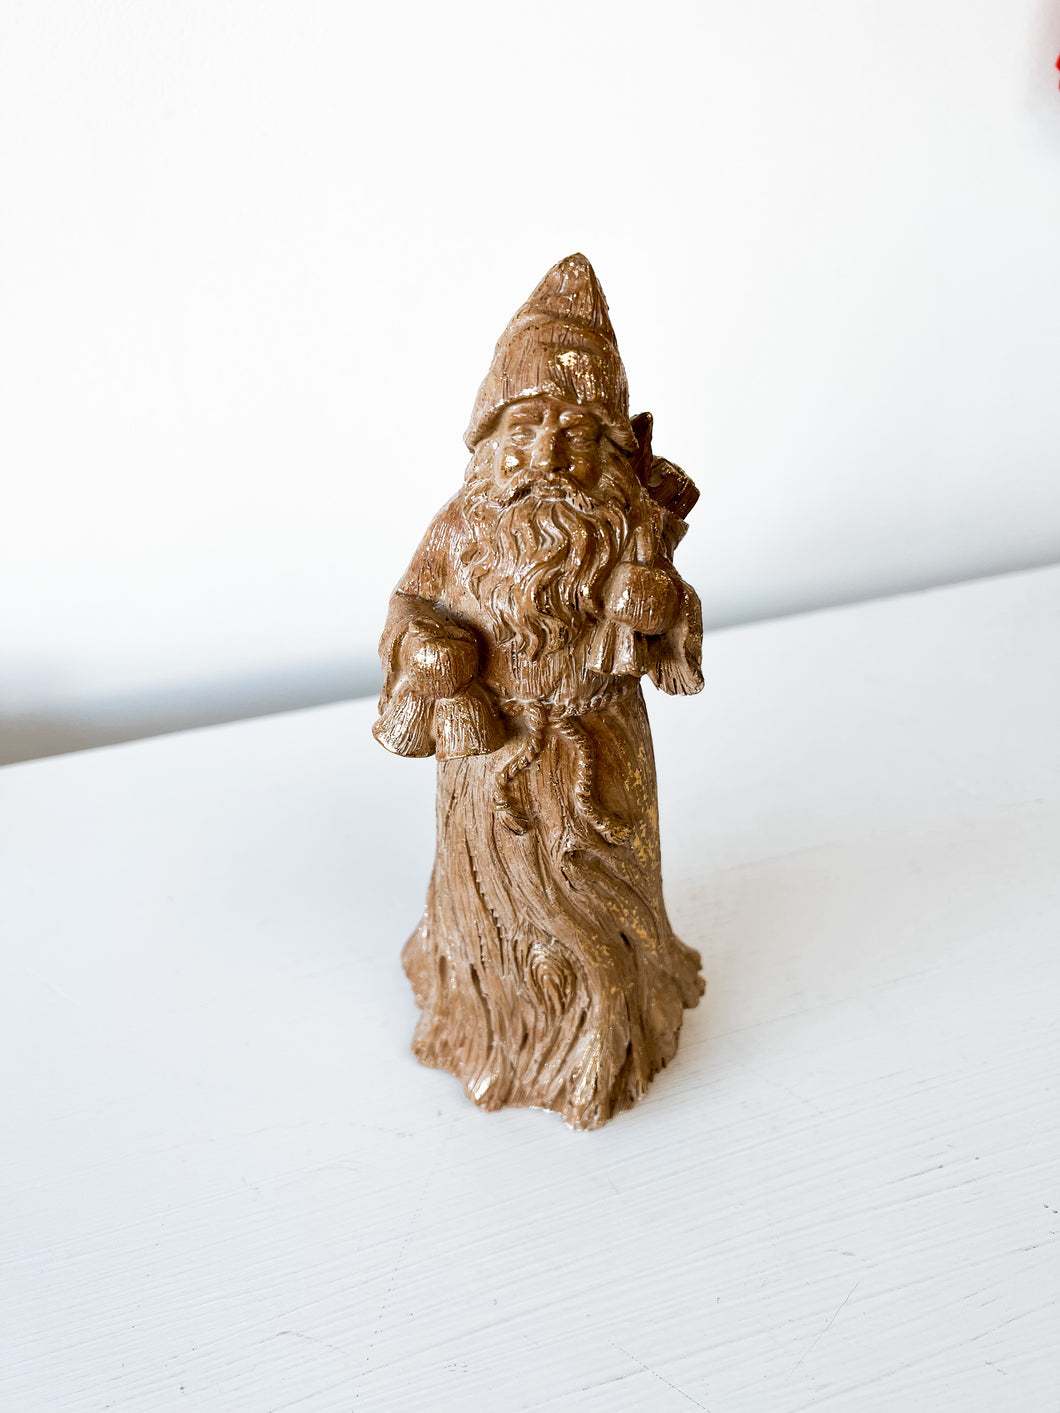 Resin Wood Carved Santa